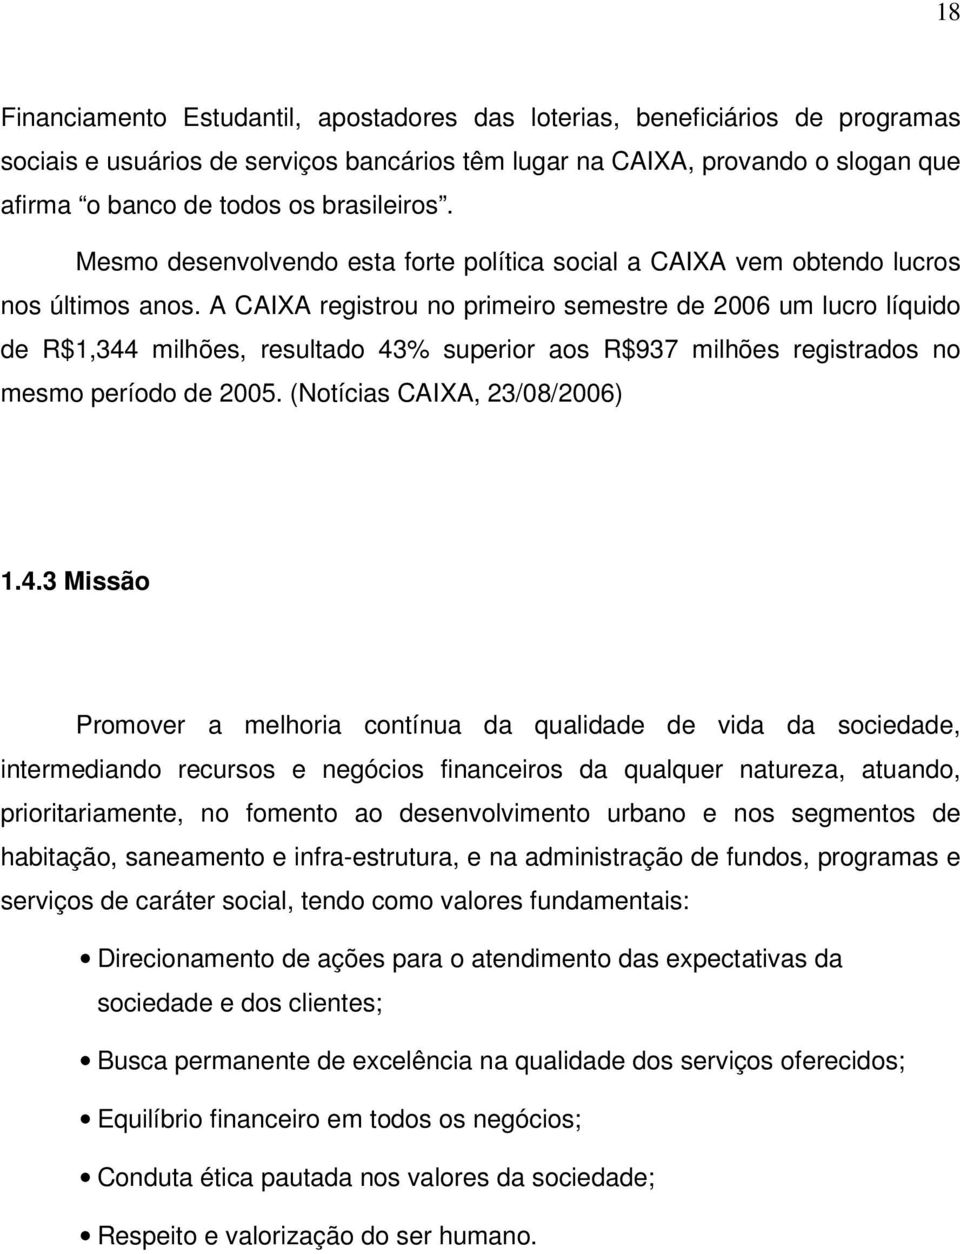 A CAIXA registrou no primeiro semestre de 2006 um lucro líquido de R$1,344